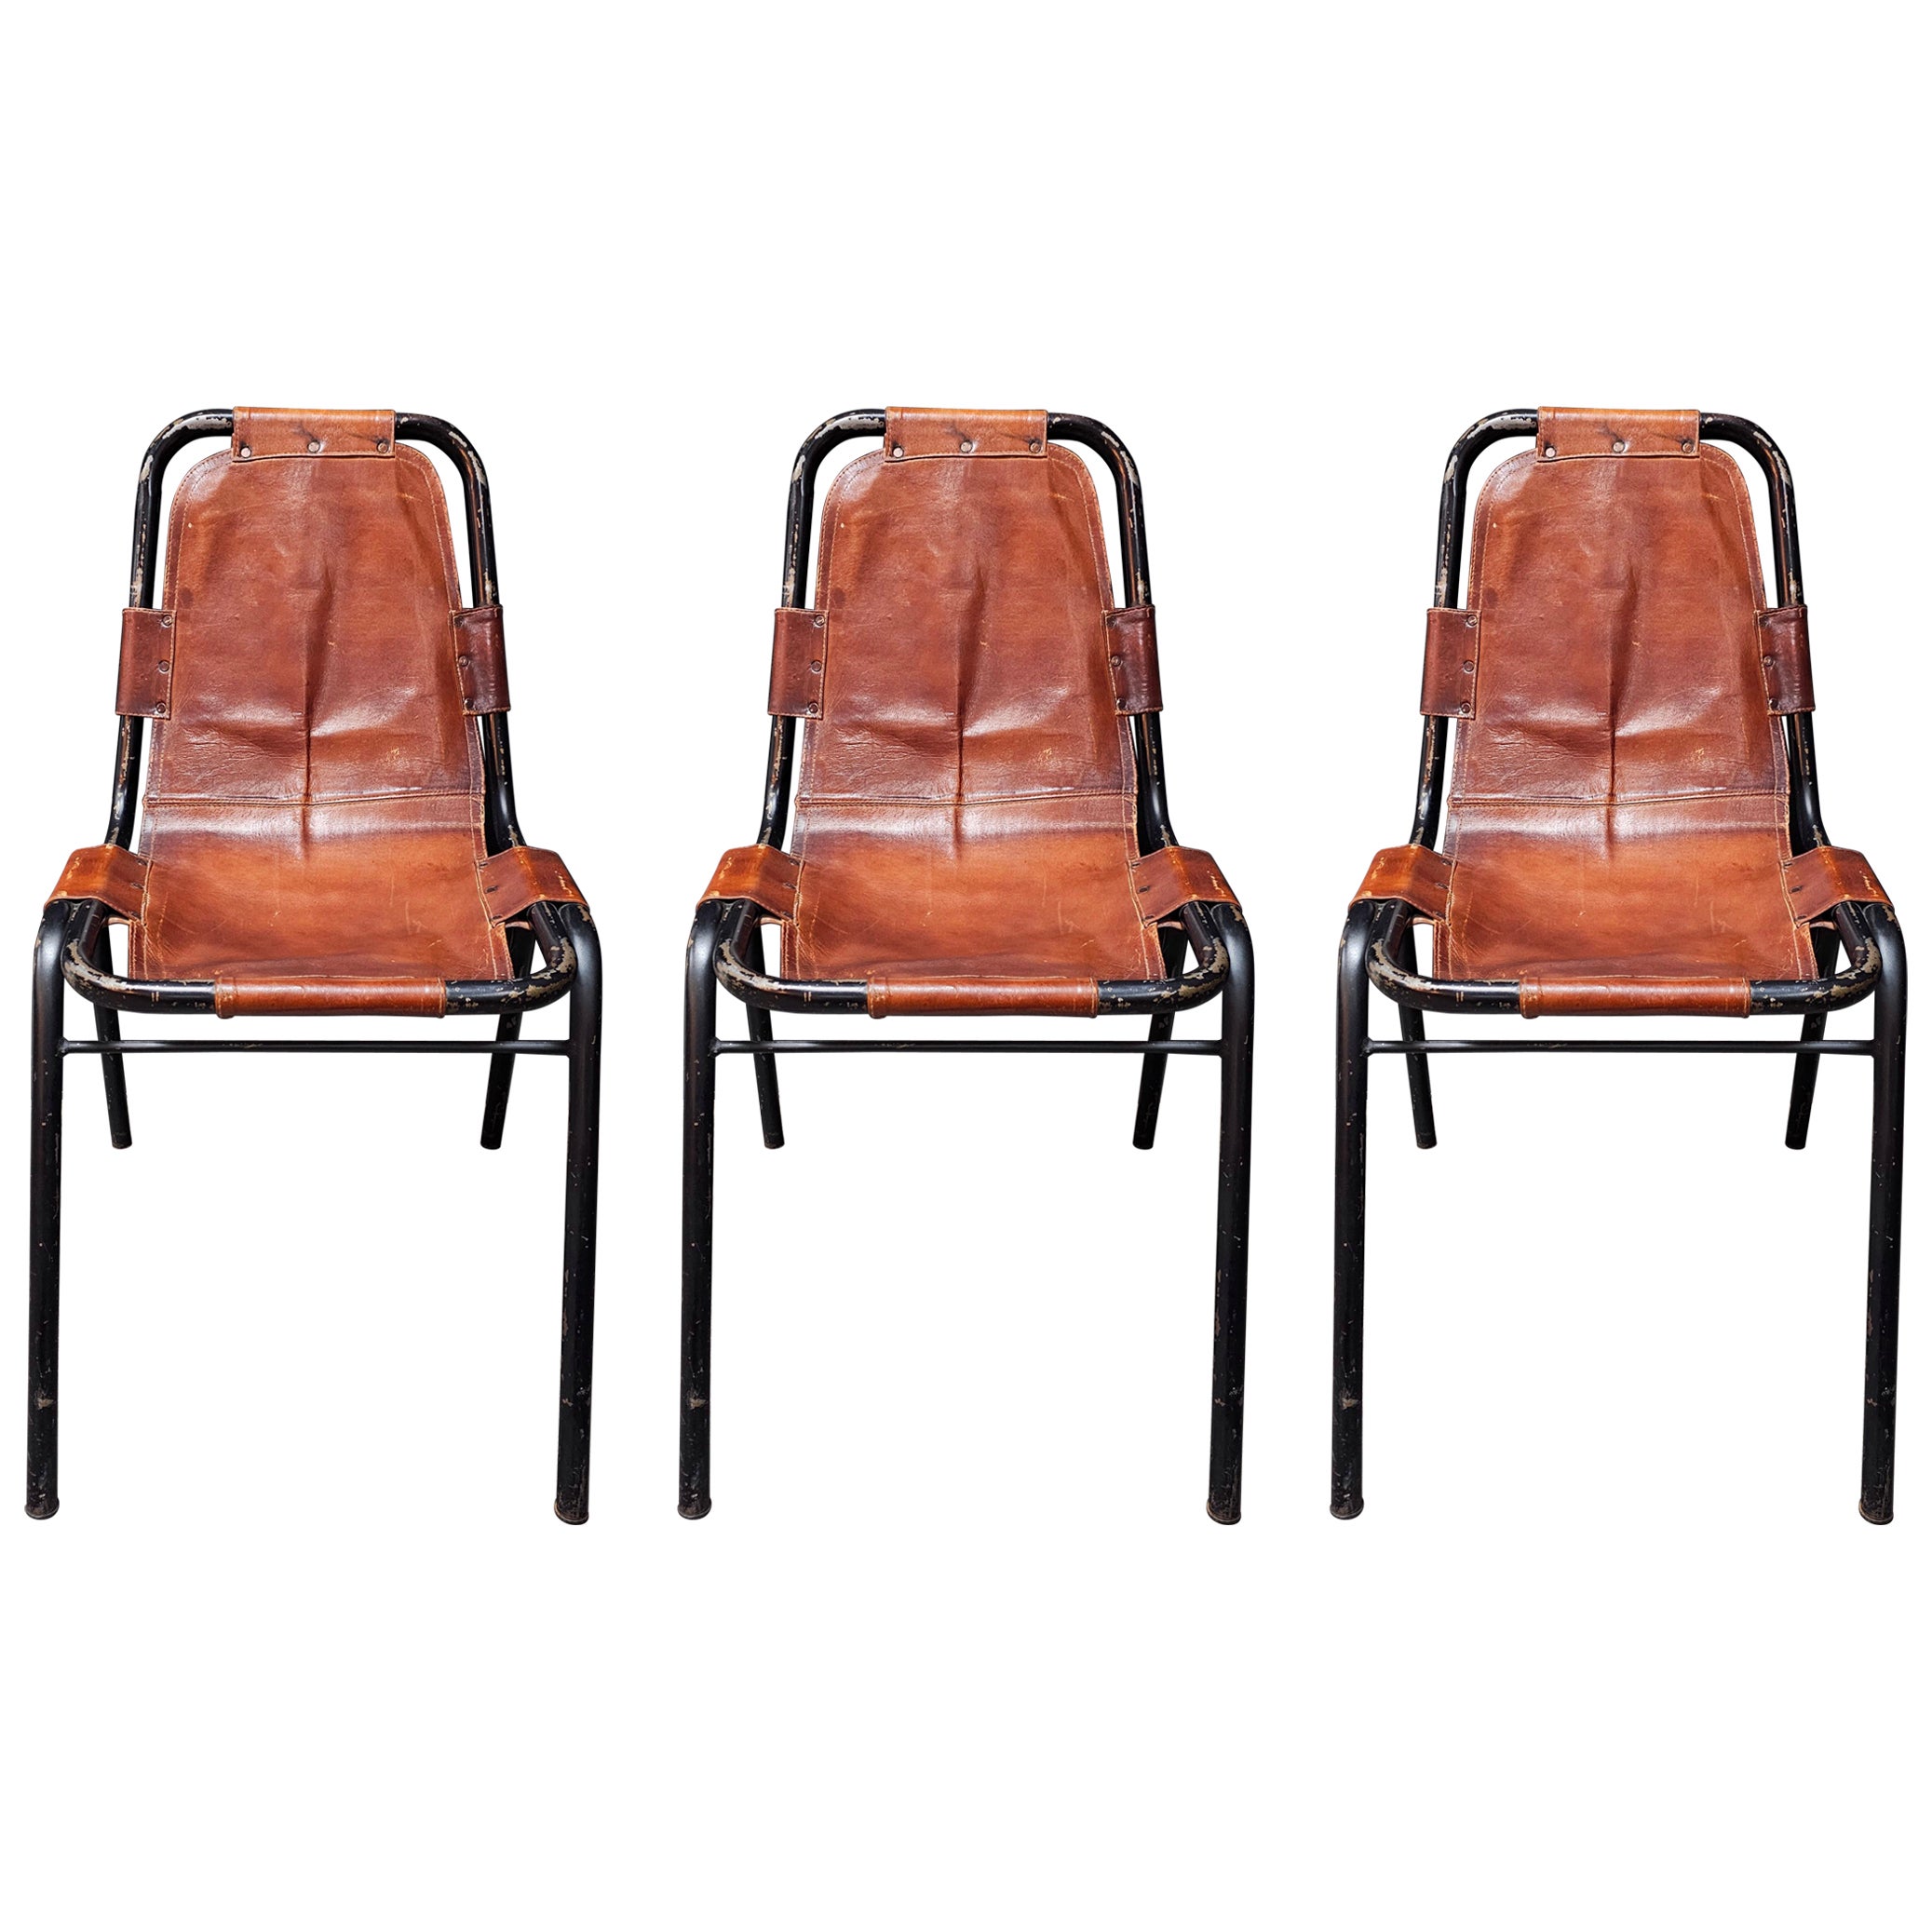 Ensemble de 3 chaises en cuir par DalVera dans le style de Charlotte Perriand, France, années 1950